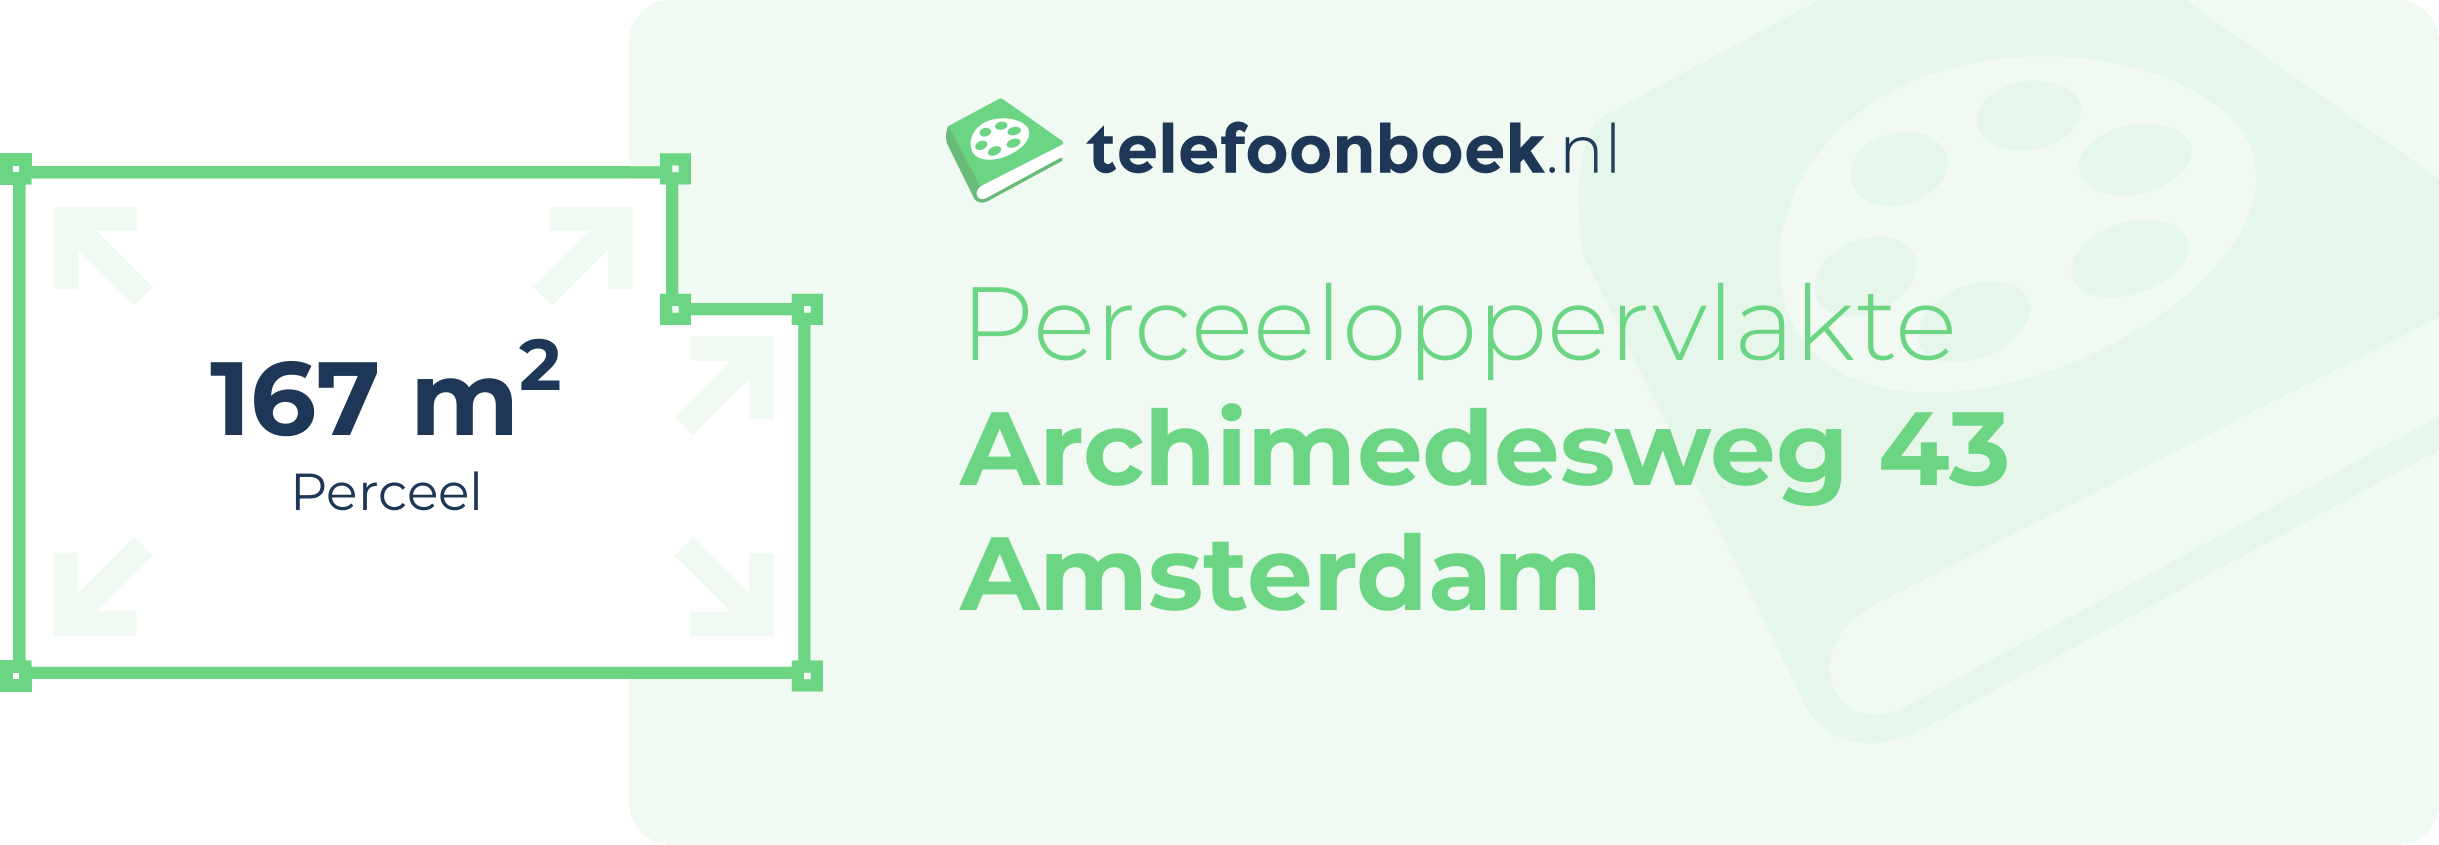 Perceeloppervlakte Archimedesweg 43 Amsterdam